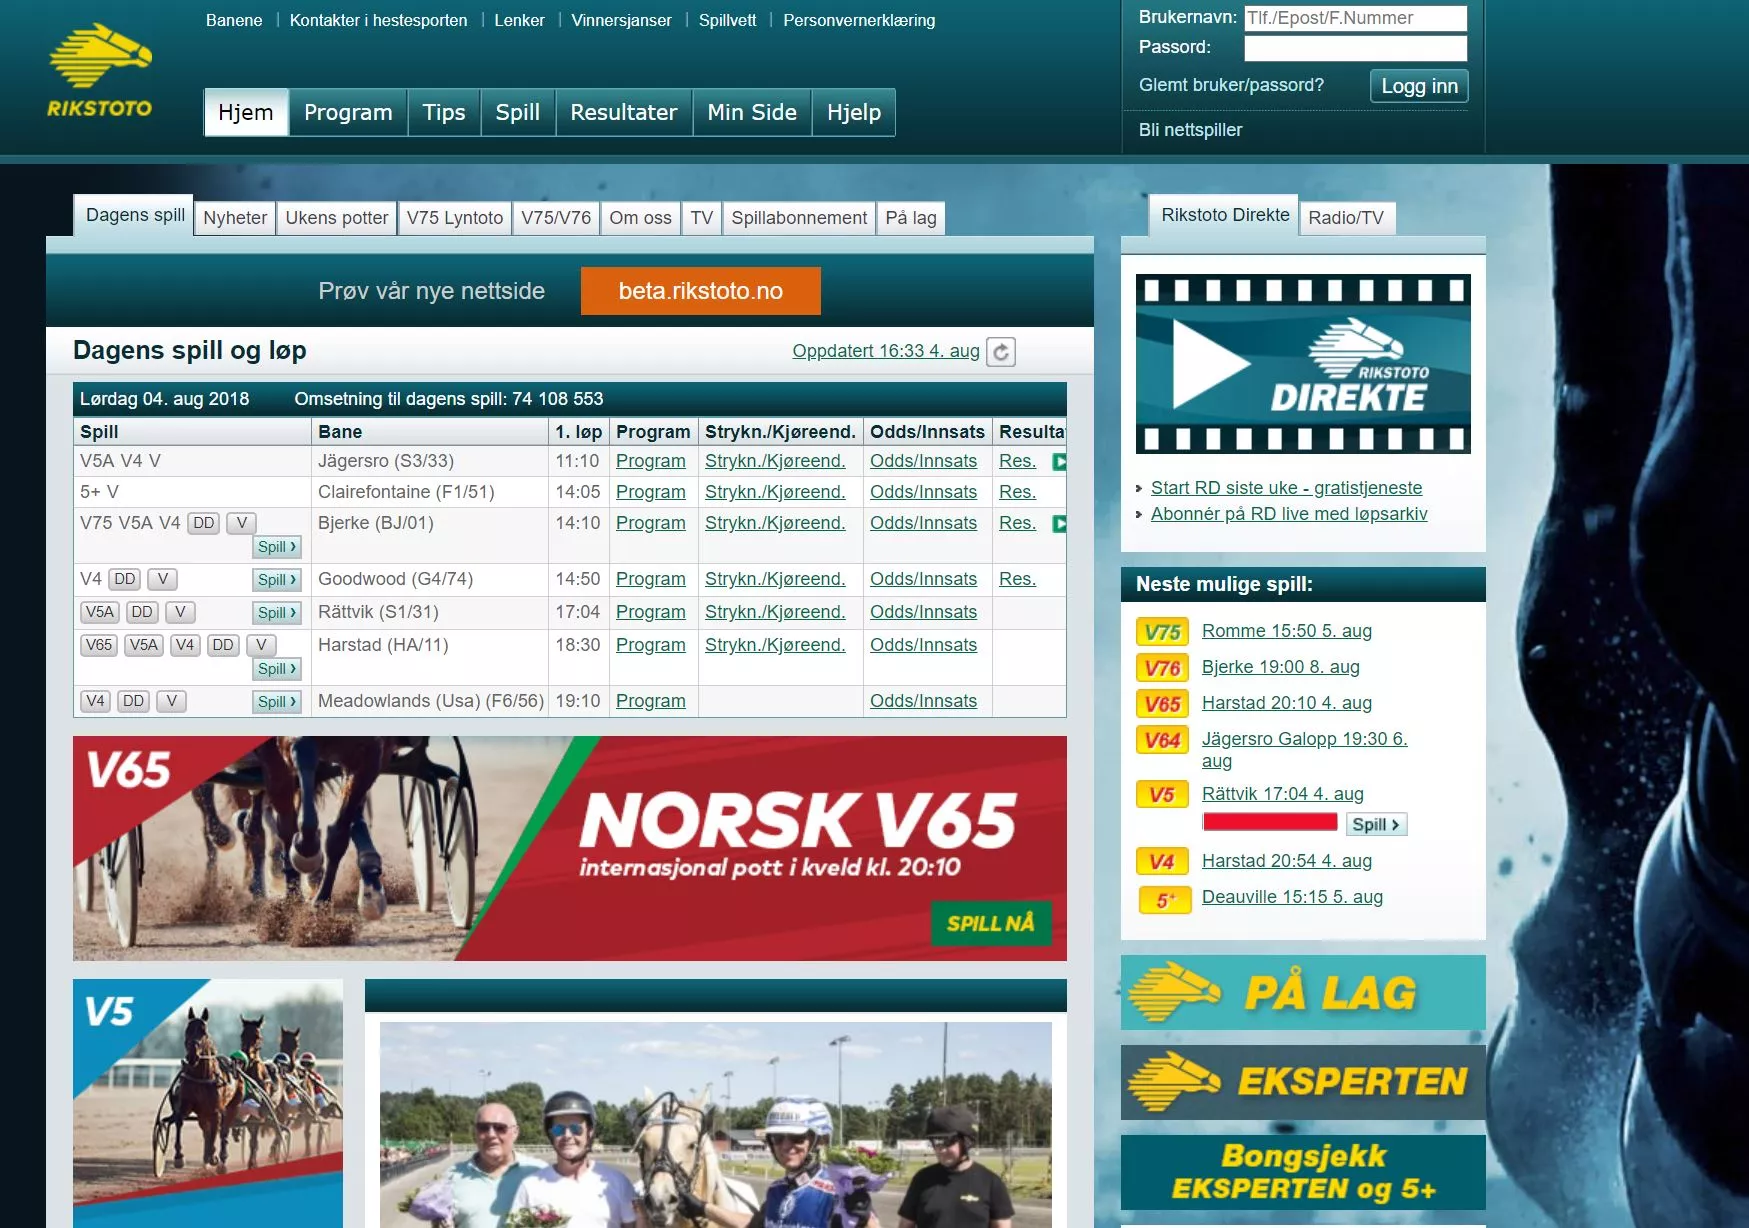 Witryna internetowa legalnego norweskiego bukmachera Rikstoto